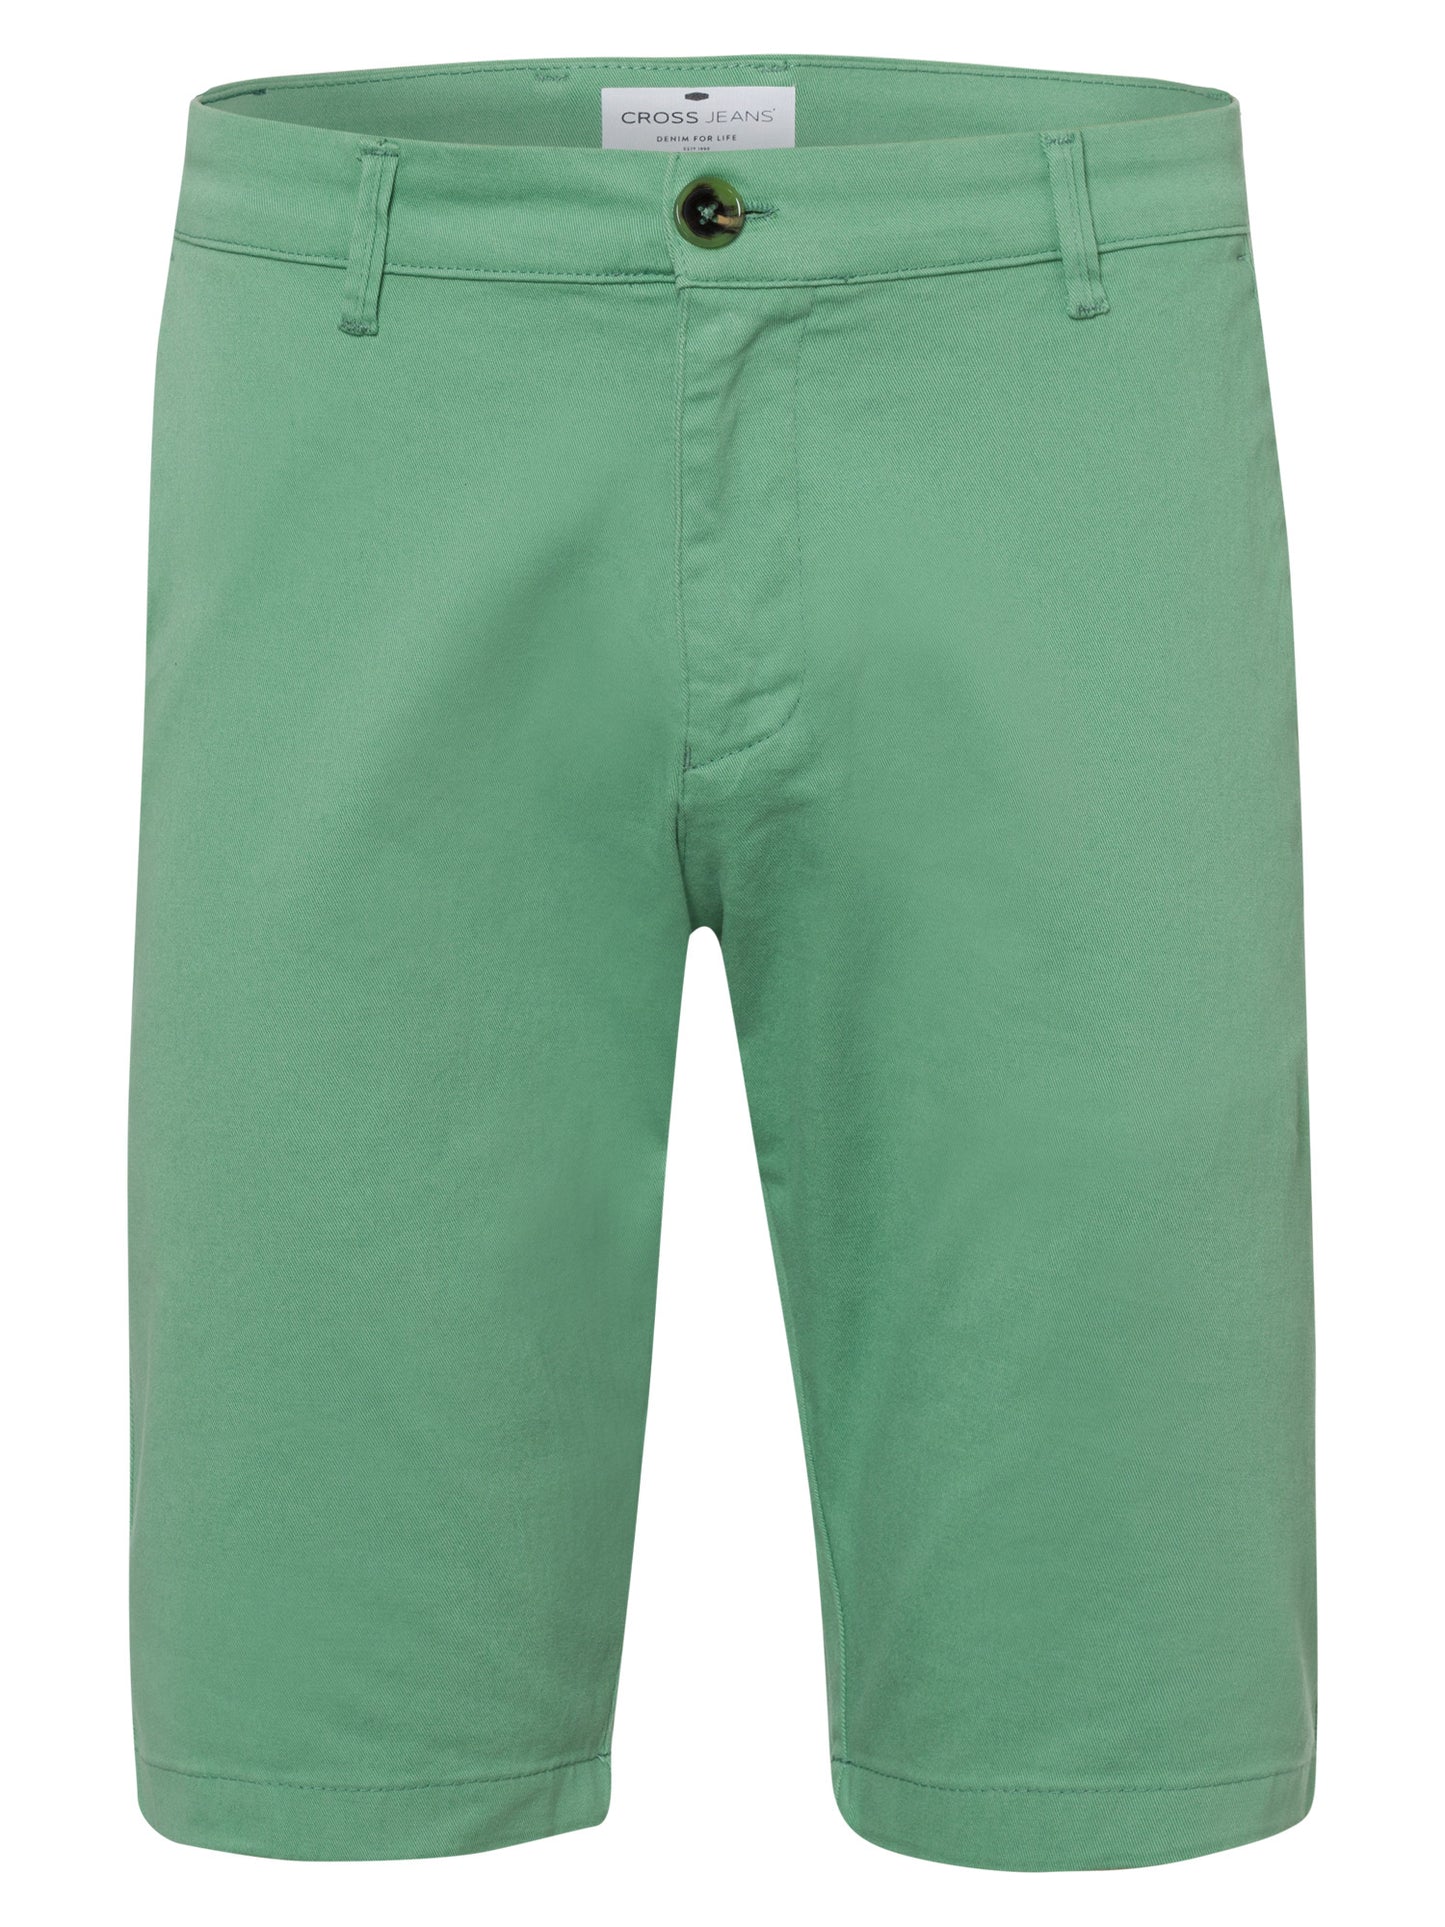 Leom Herren Jeans Regular Shorts grün